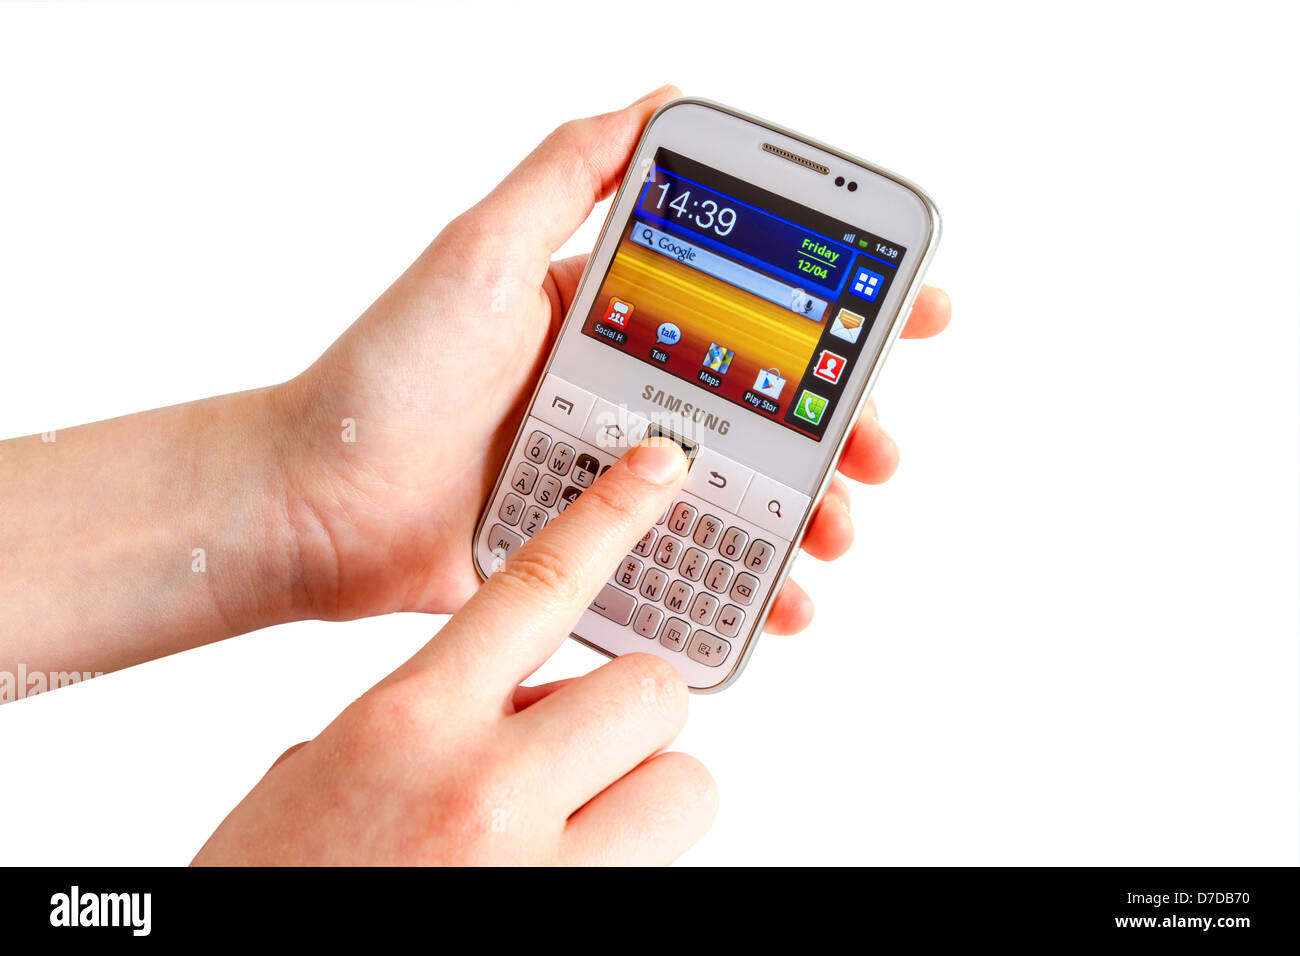 Samsung Galaxy Y Pro B5510 è un Android smartphone con tastiera QWERTY completa candybar. Foto Stock